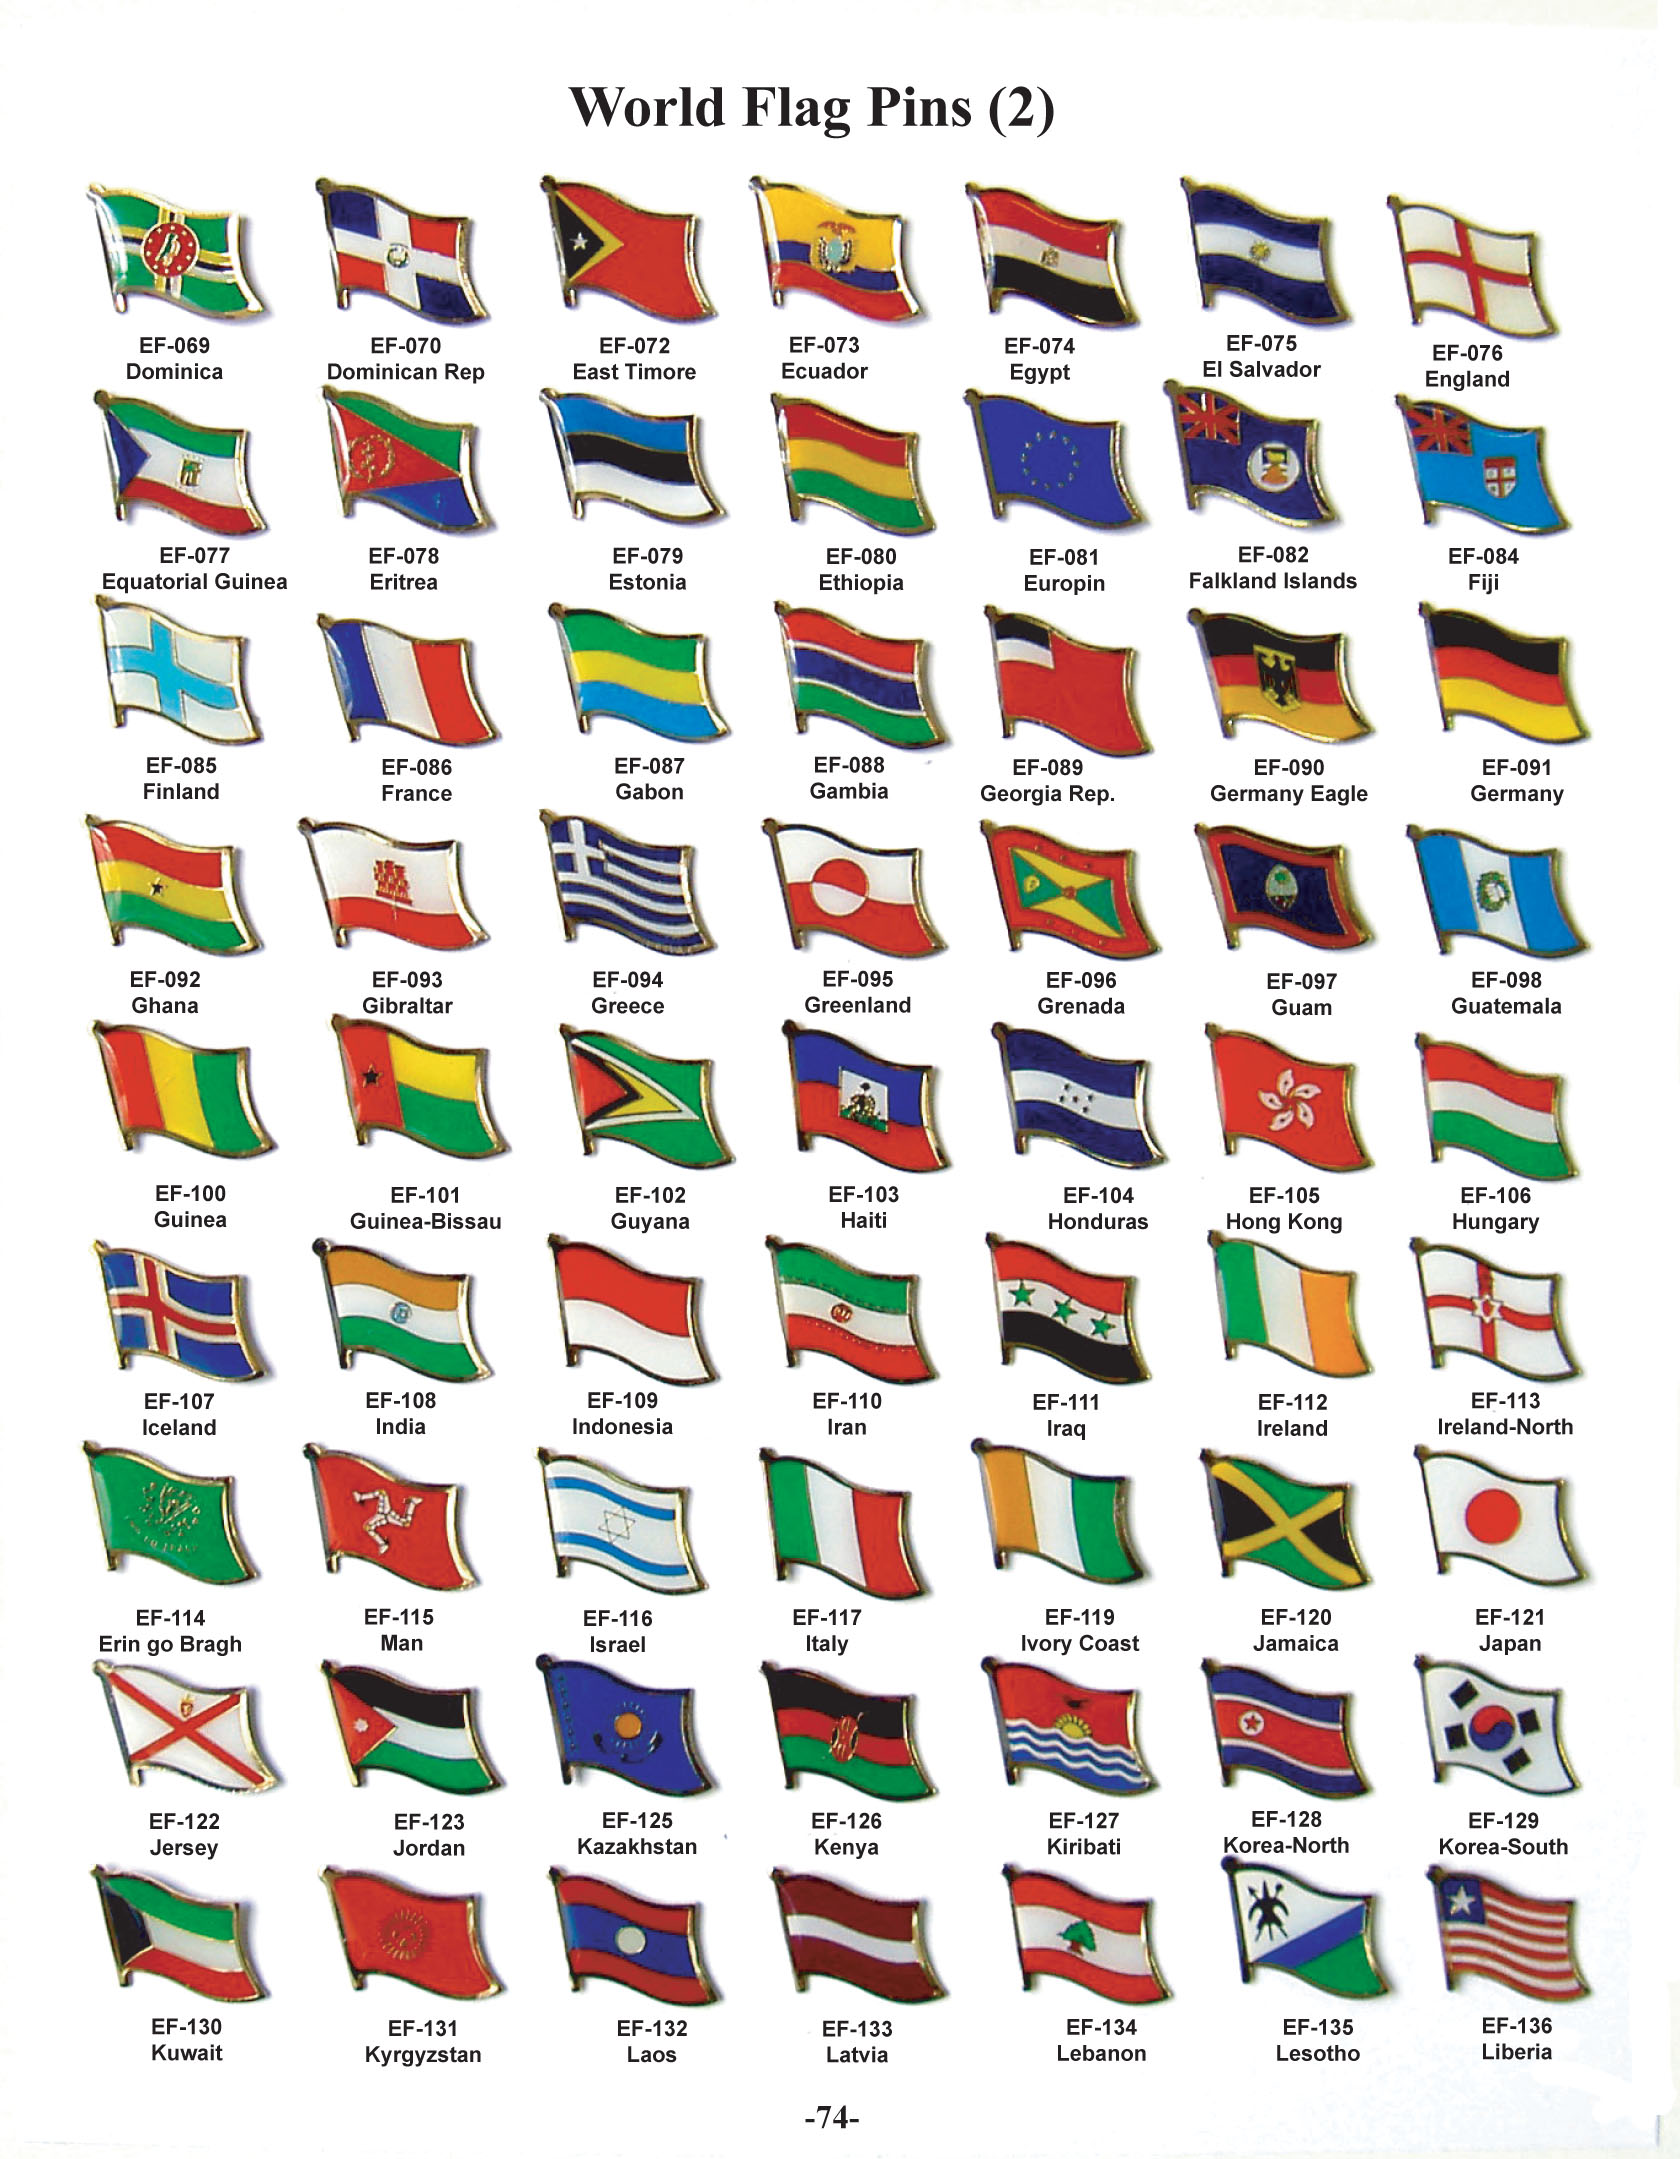 Как они называются. Флаги стран и их названия на русском языке. Все страны мира и их флаги и названия на русском языке. Государственные флаги стран мира с названиями стран на русском языке. Все флаги стран и их названия на русском языке.